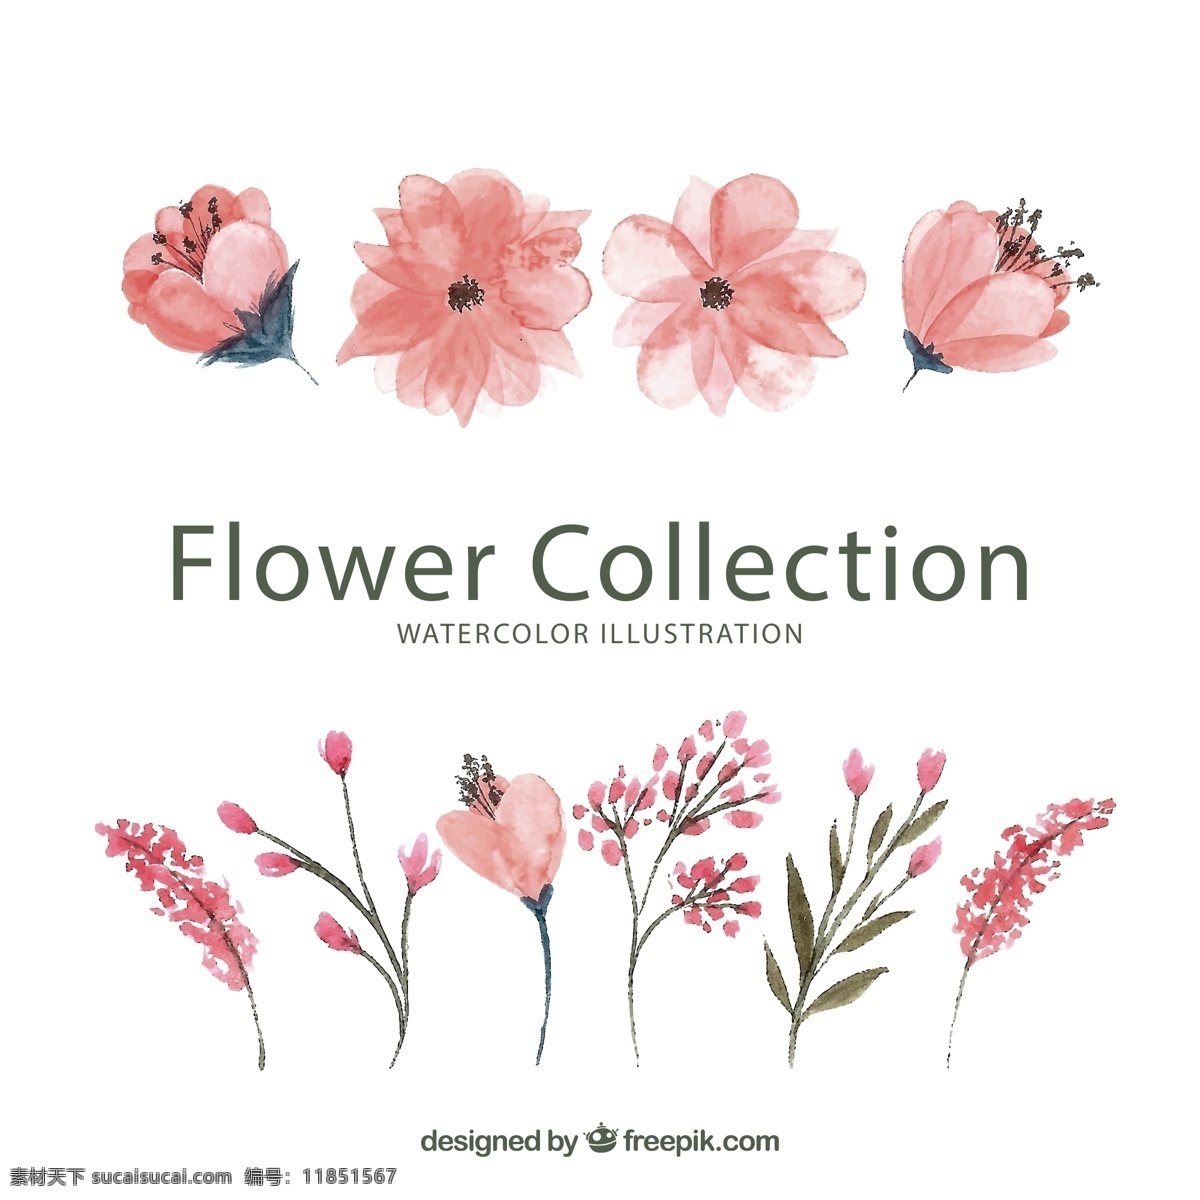 水彩 绘 粉色 花卉图片 花卉 矢量图 格式 矢量 高清图片